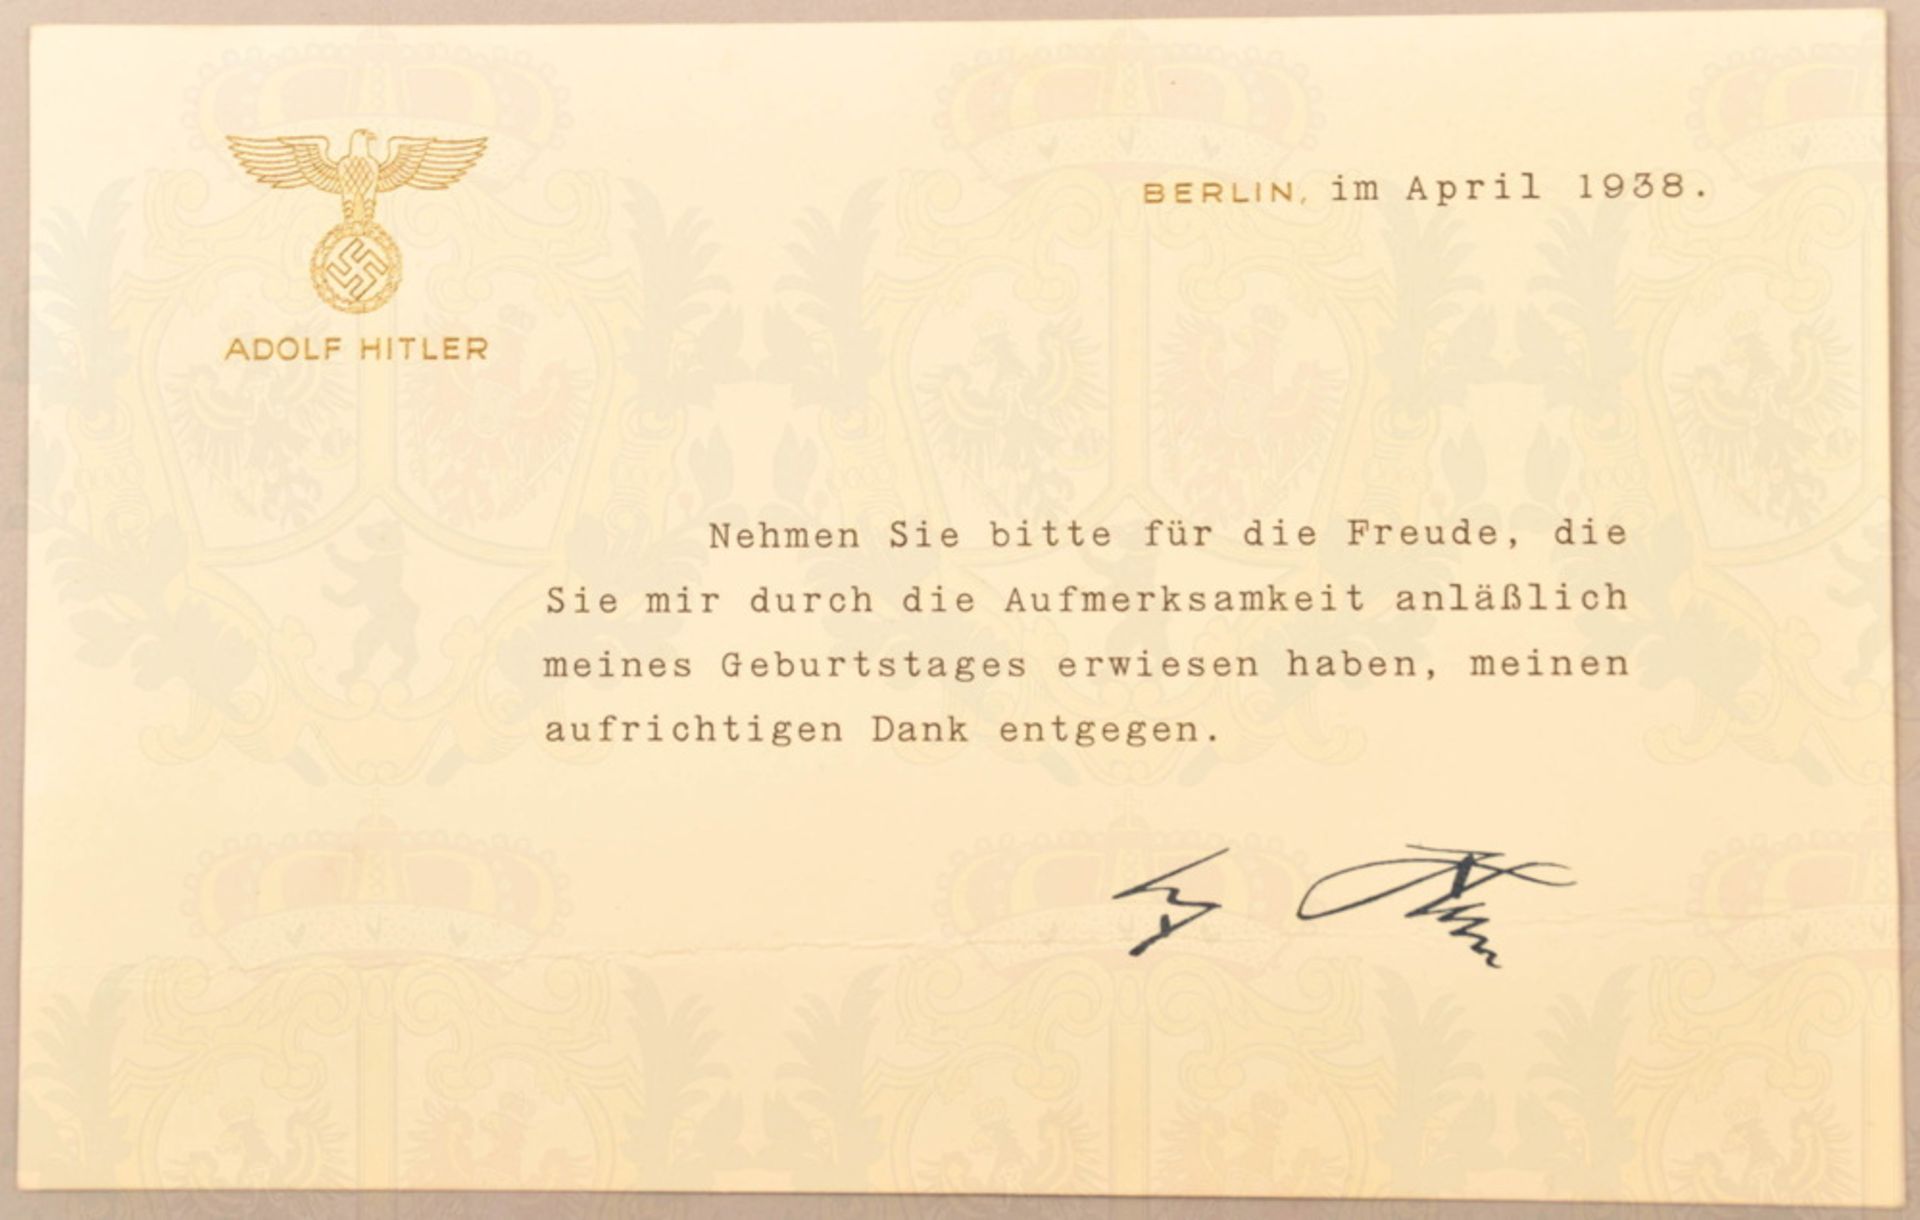 Dankeskarte Adolf Hitler 1938, aufrichtiger Dank für anläßlich des Geburtstages erwiesene - Image 2 of 2